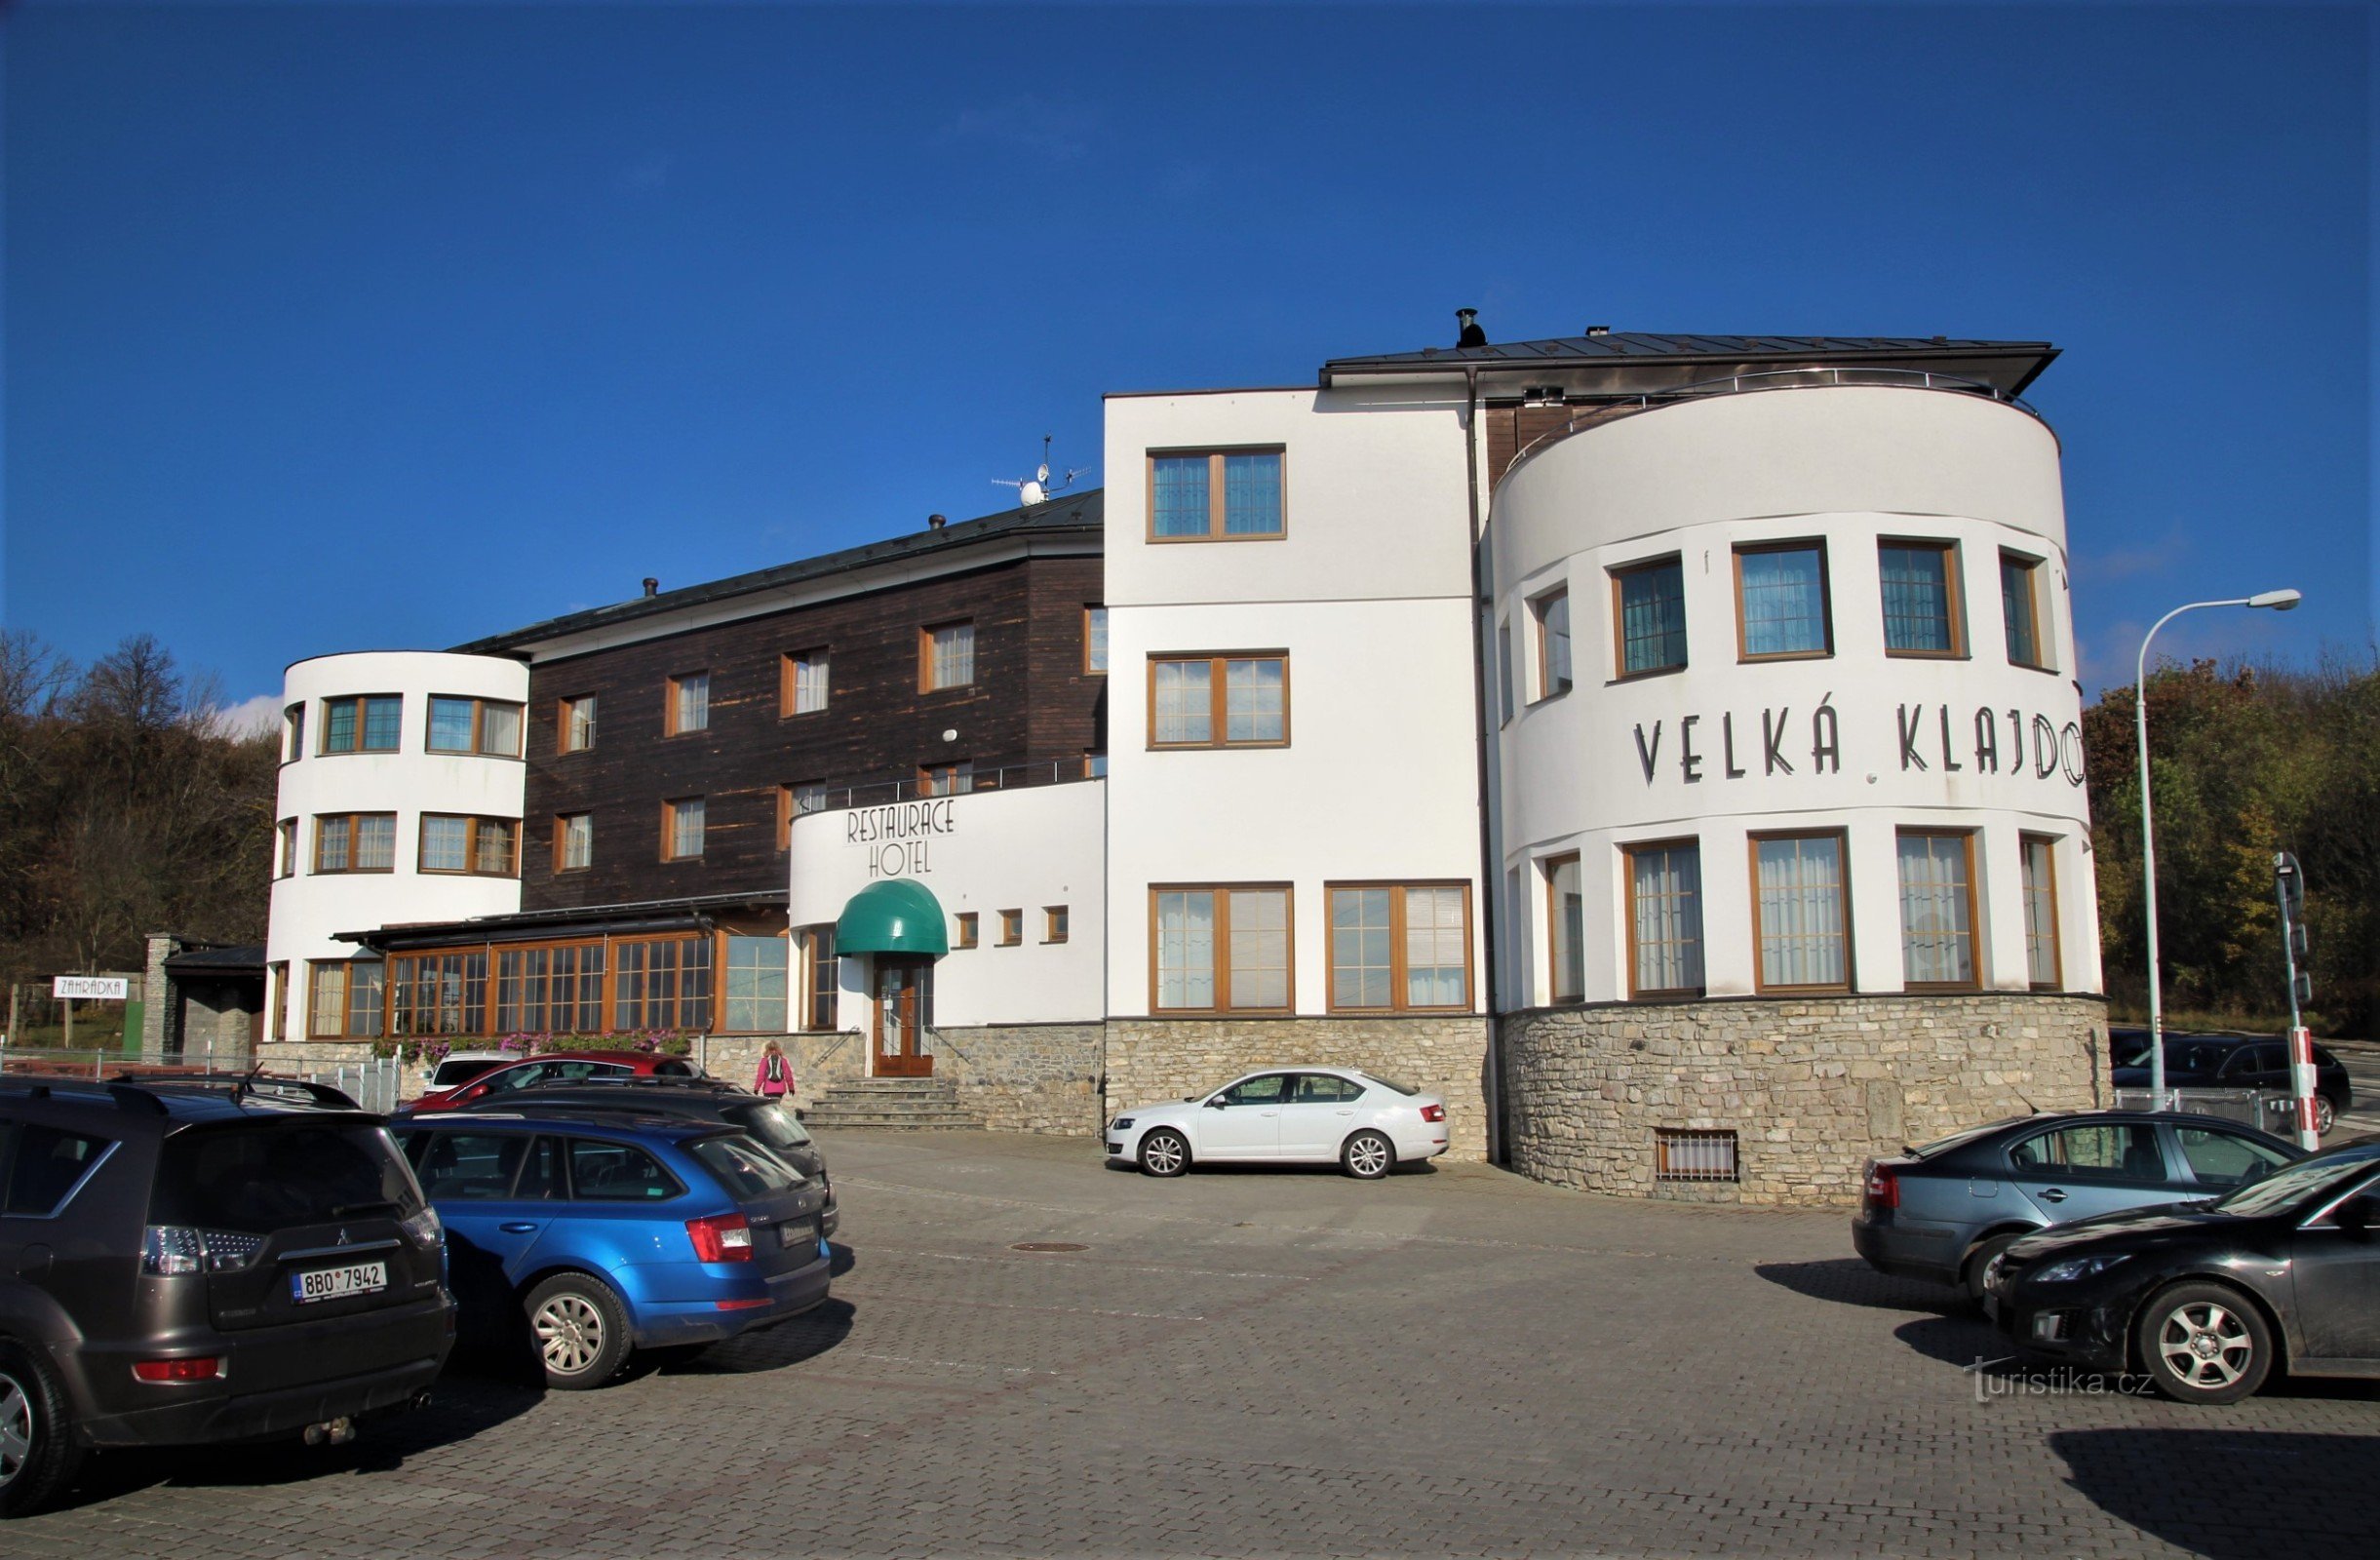 Ważnym punktem na trasie jest stylowy hotel Velká Klajdovka